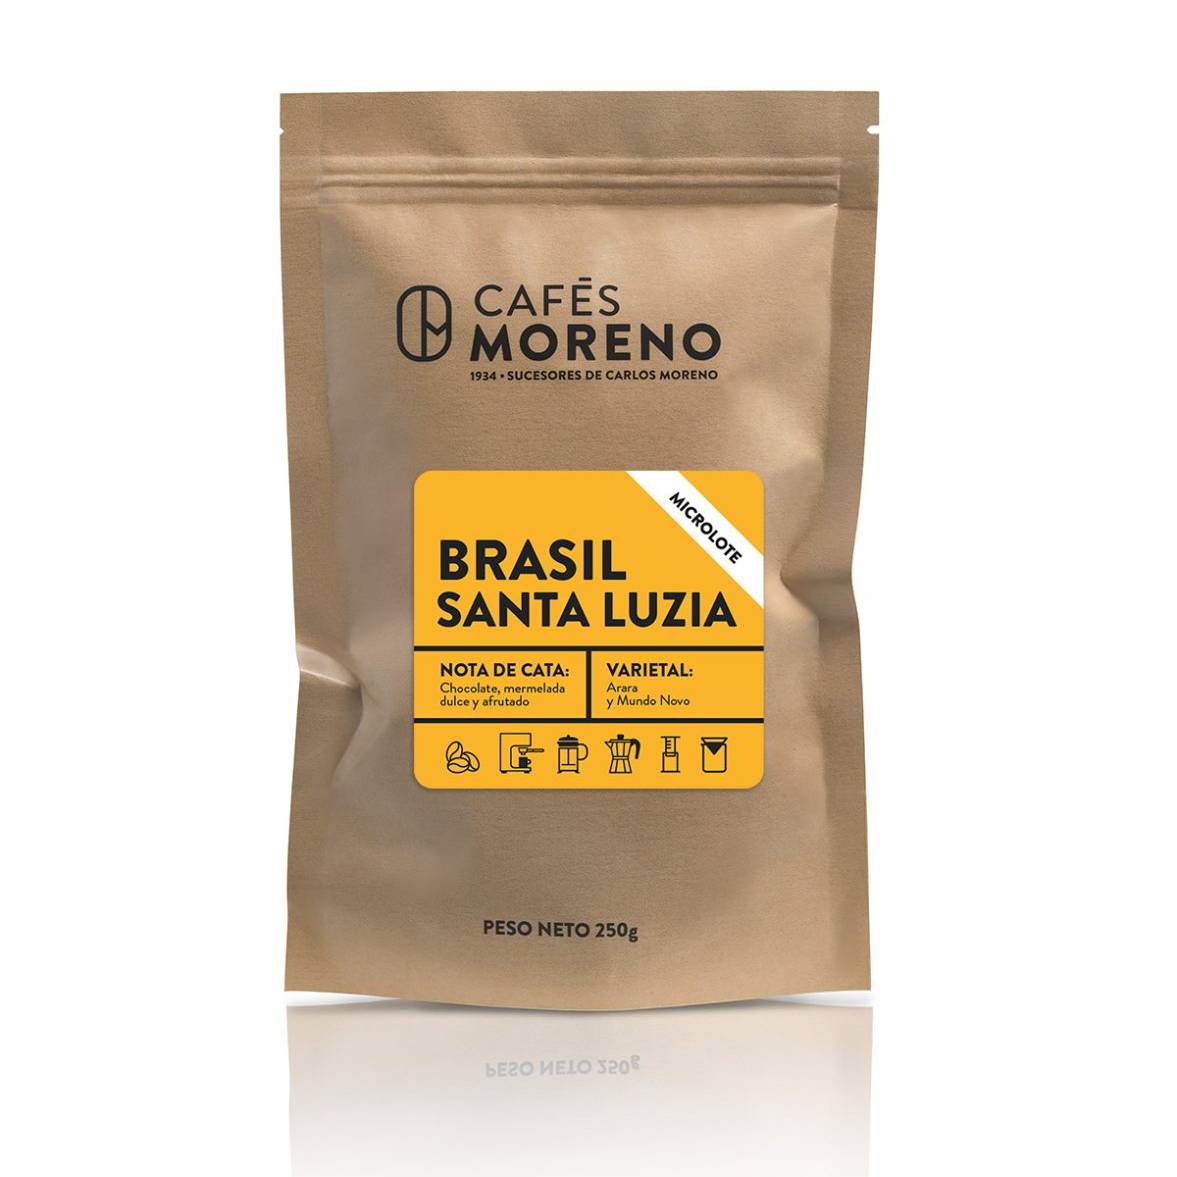 imagen de bolsa de café con la etiqueta de nuevo microlote Brasil Santa Luzia